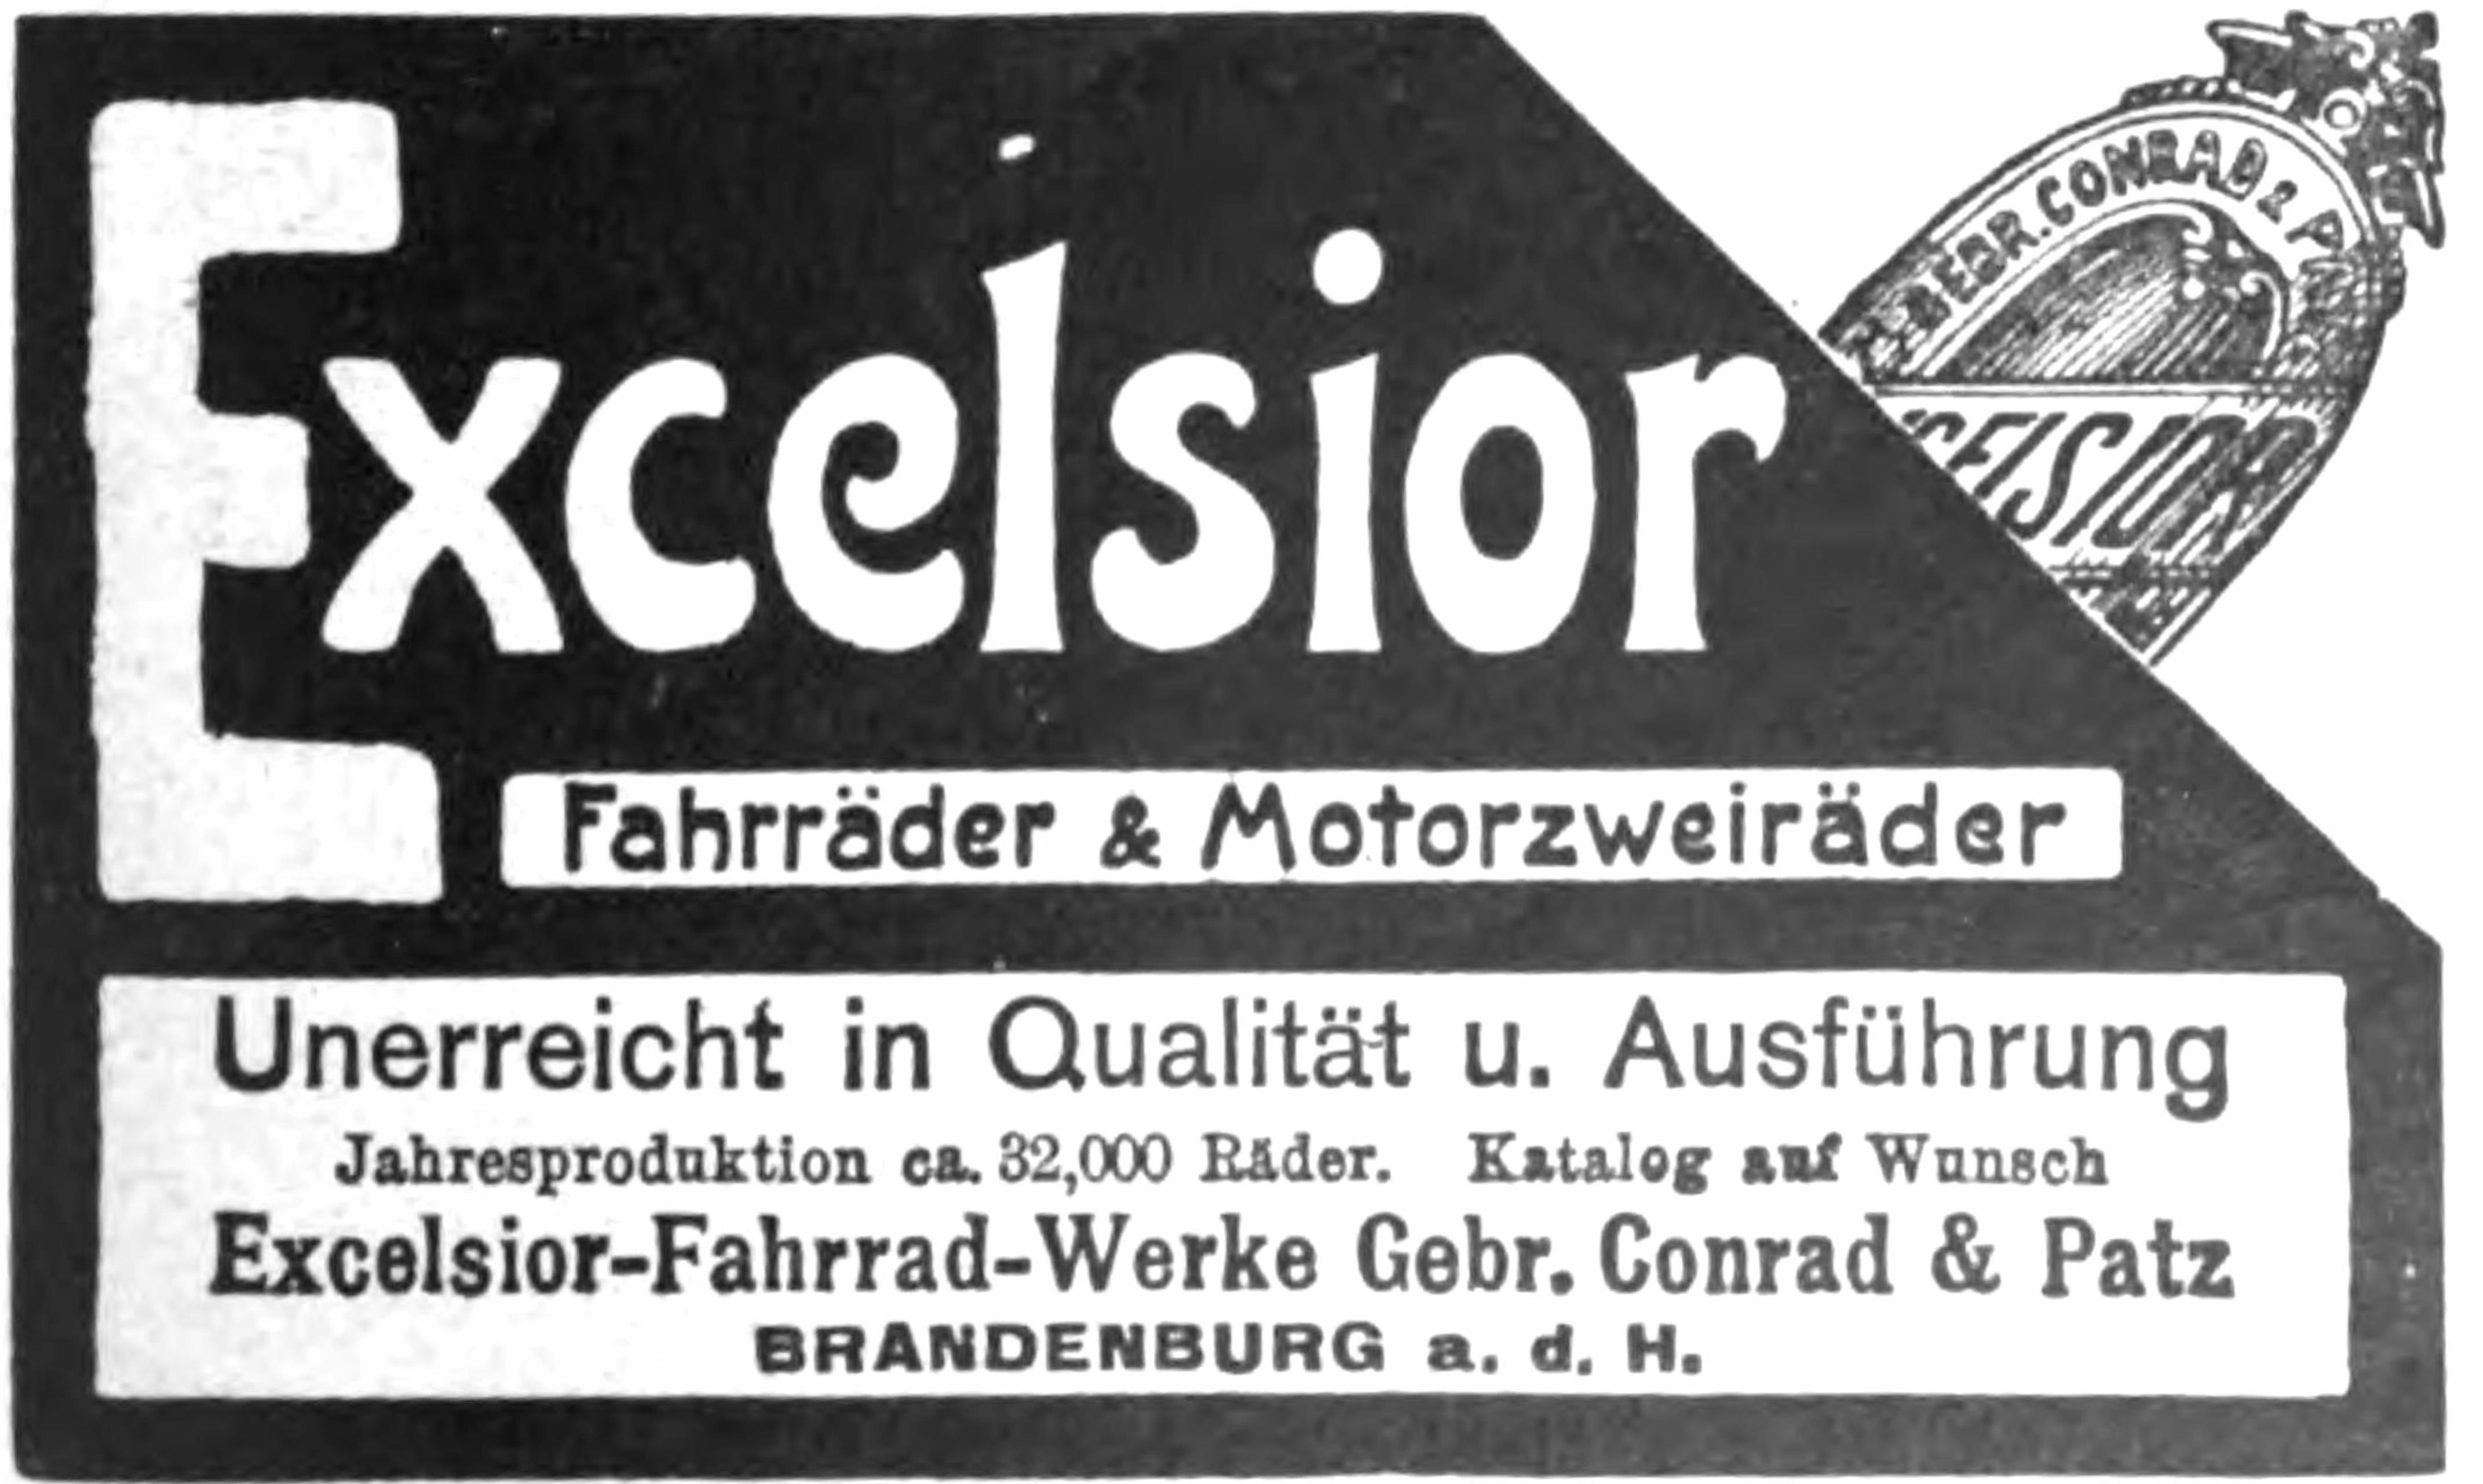 Excelsior 1905 382.jpg